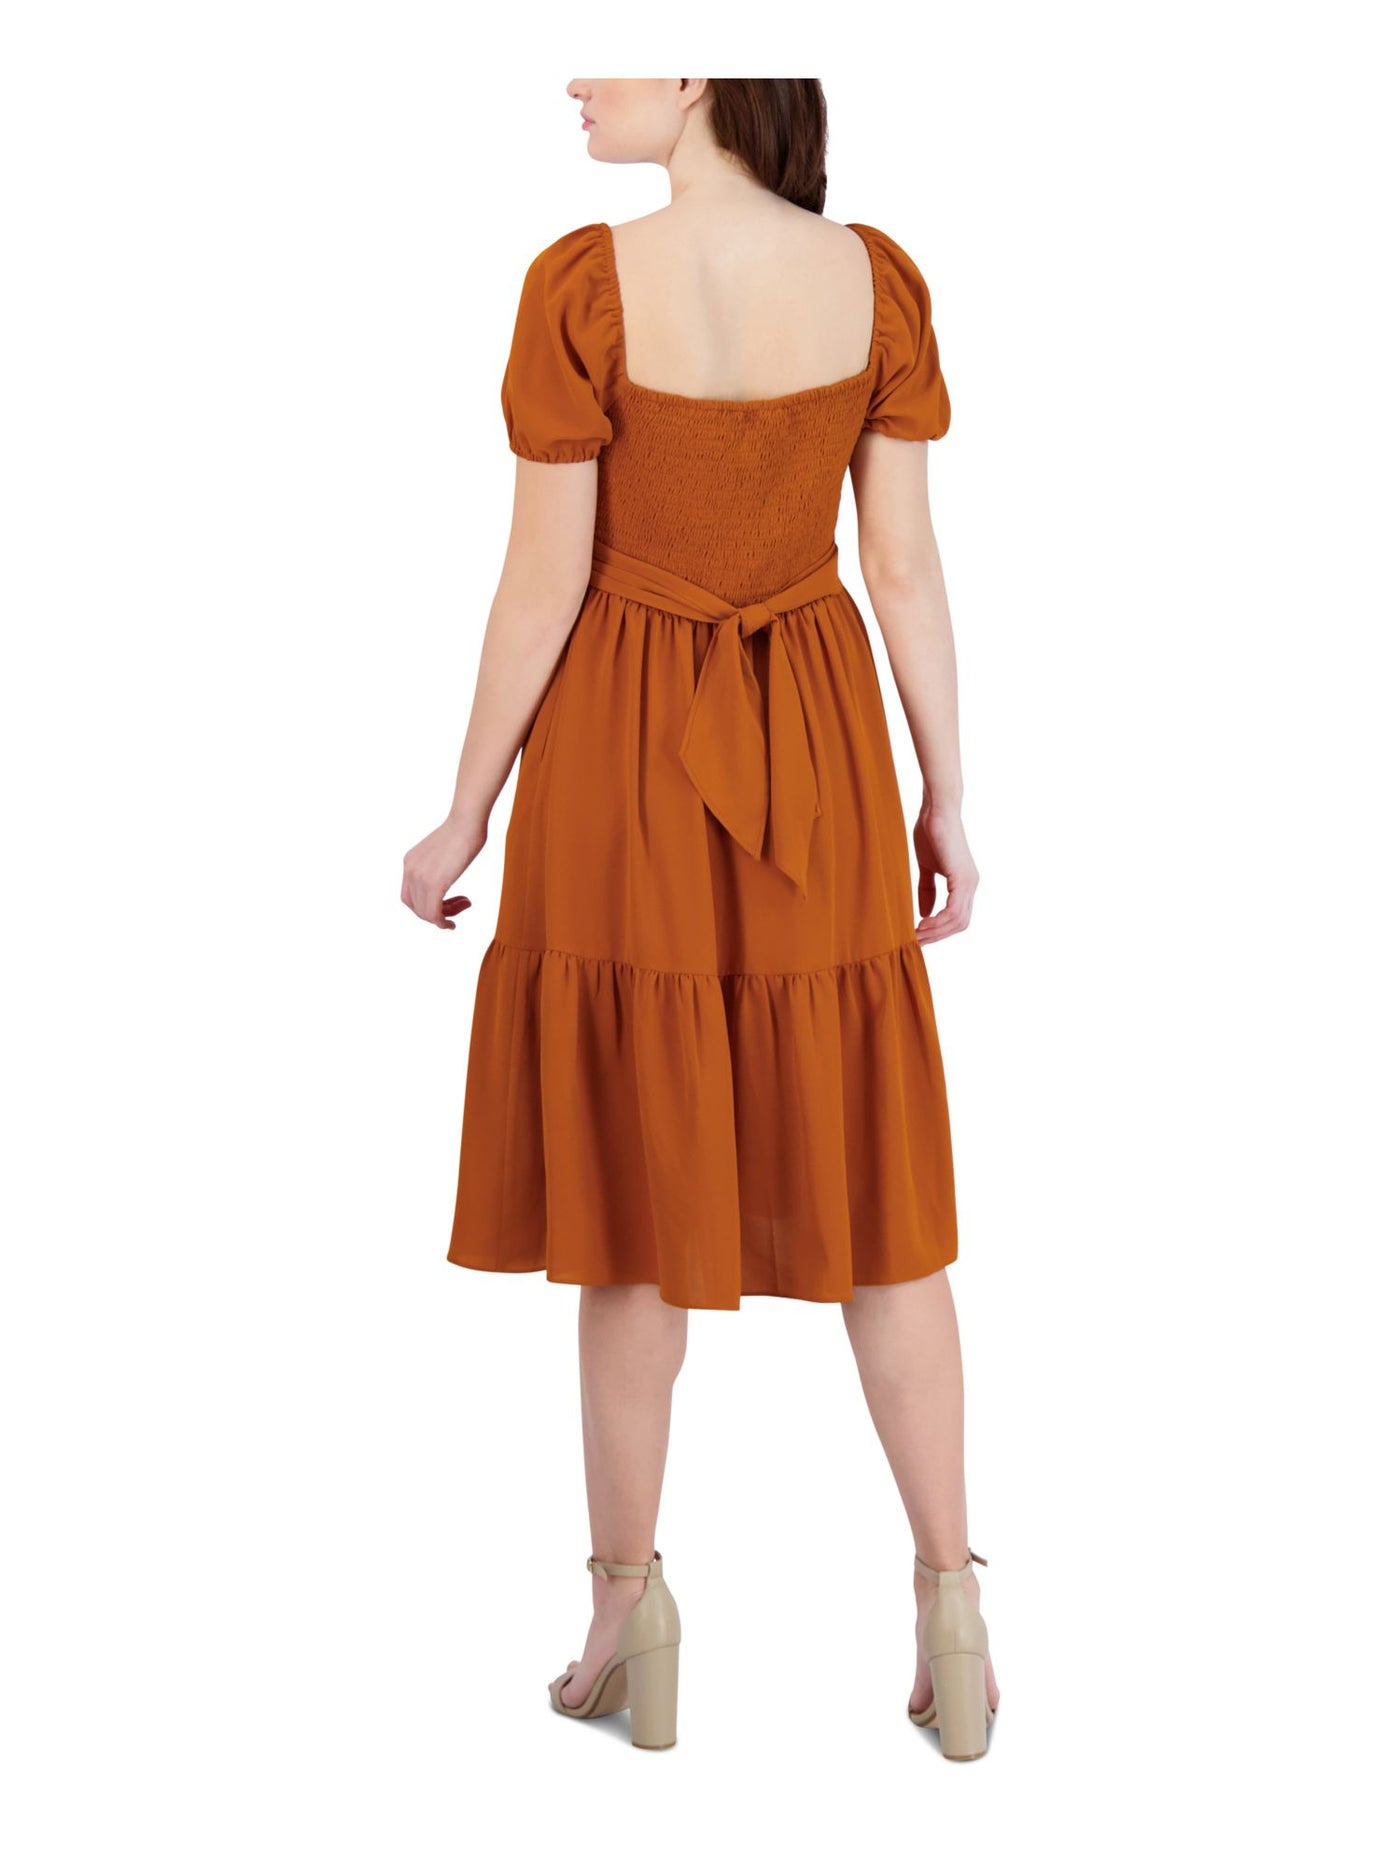 BCBGENERATION Womens Orange Smocked Short Sleeve Queen Anne Neckline Below The Knee Baby Doll Dress 16